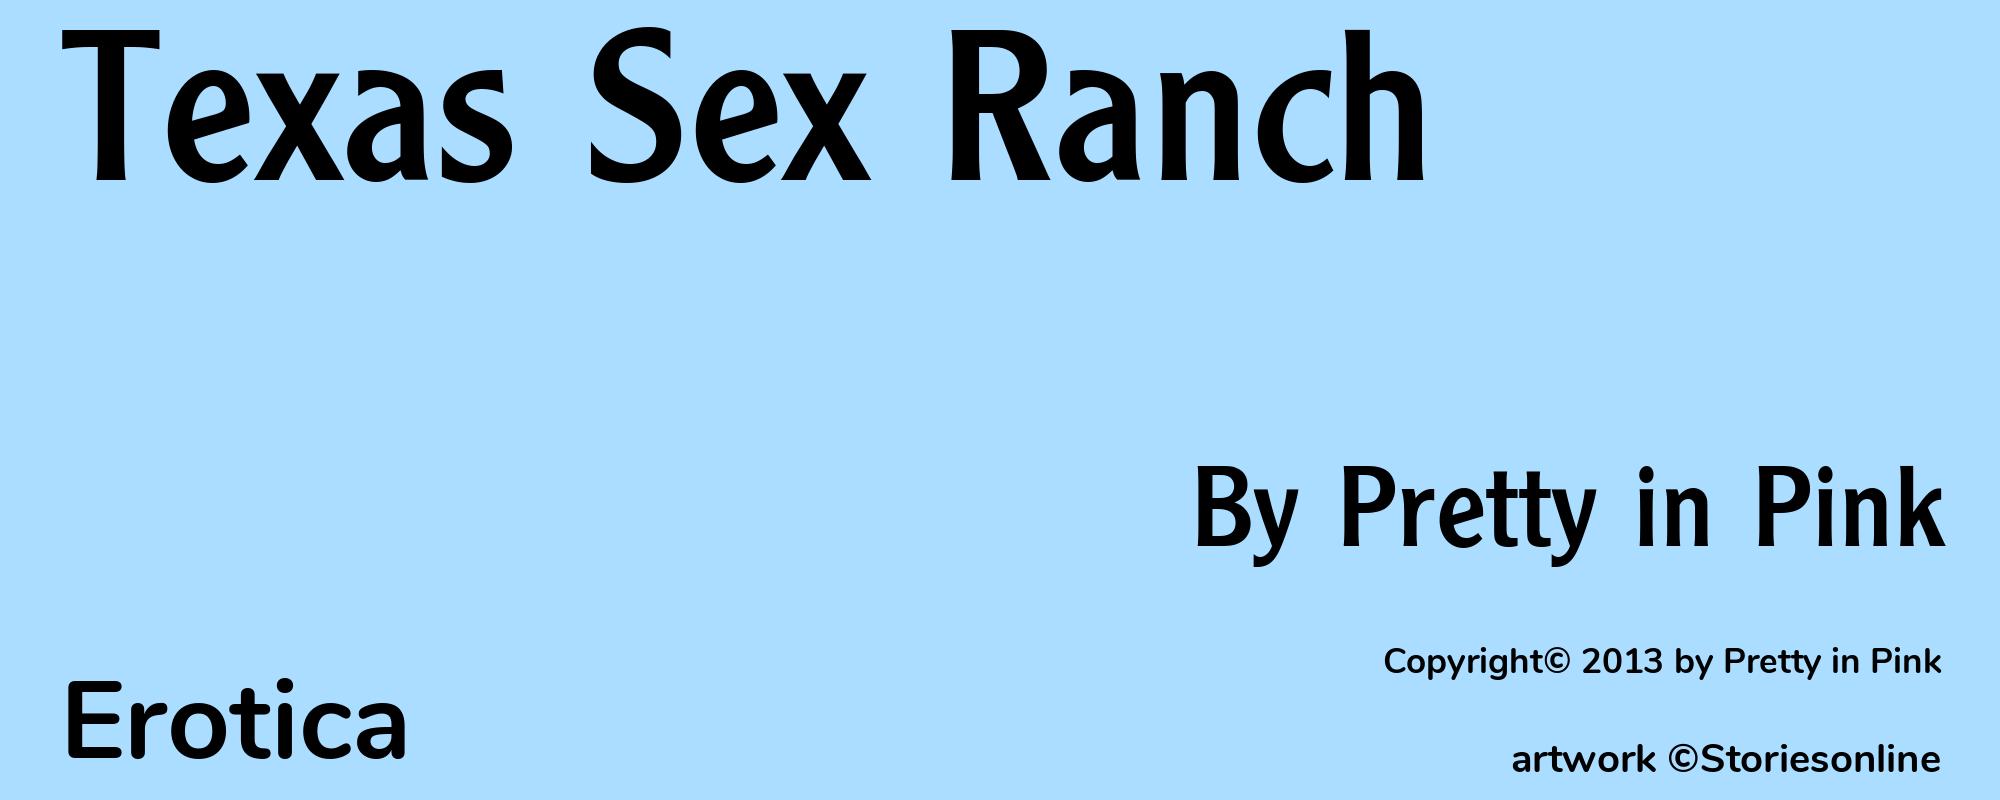 Texas Sex Ranch - Cover